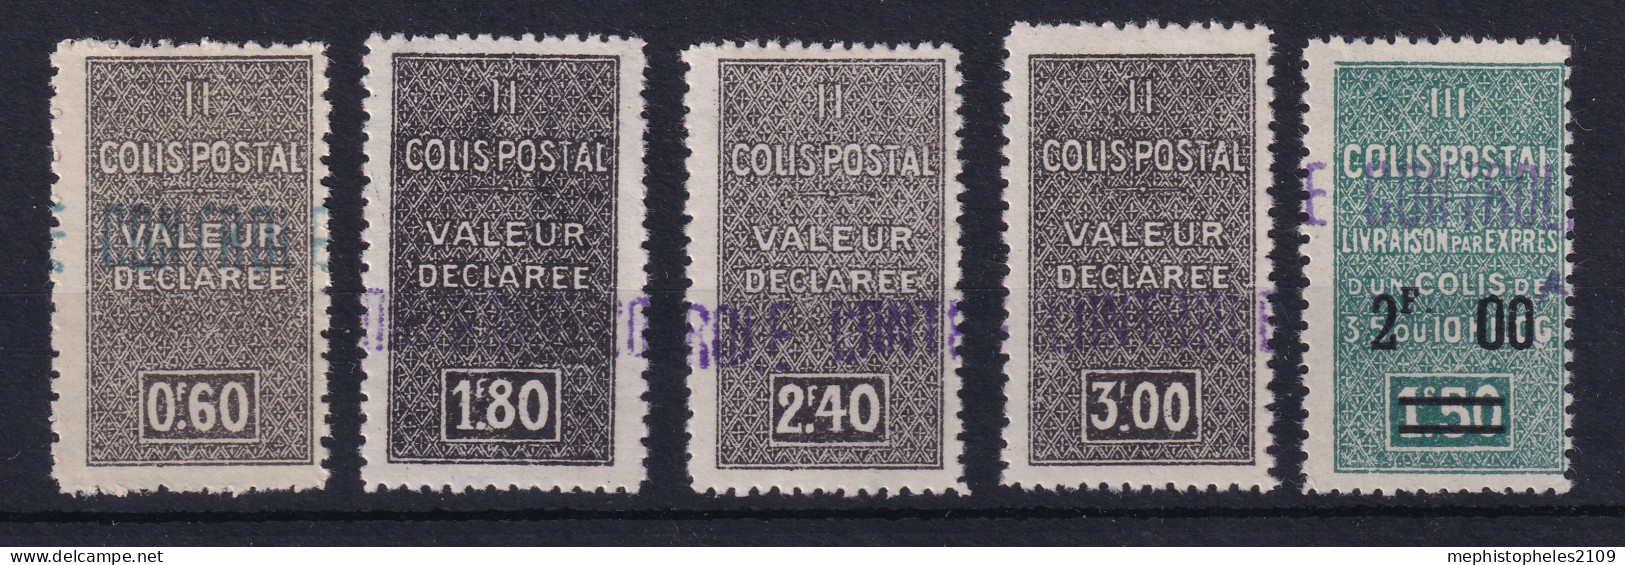 ALGÉRIE 1939 - MLH - YT 55, 56, 57, 58, 59 - COLIS POSTAUX - Paquetes Postales